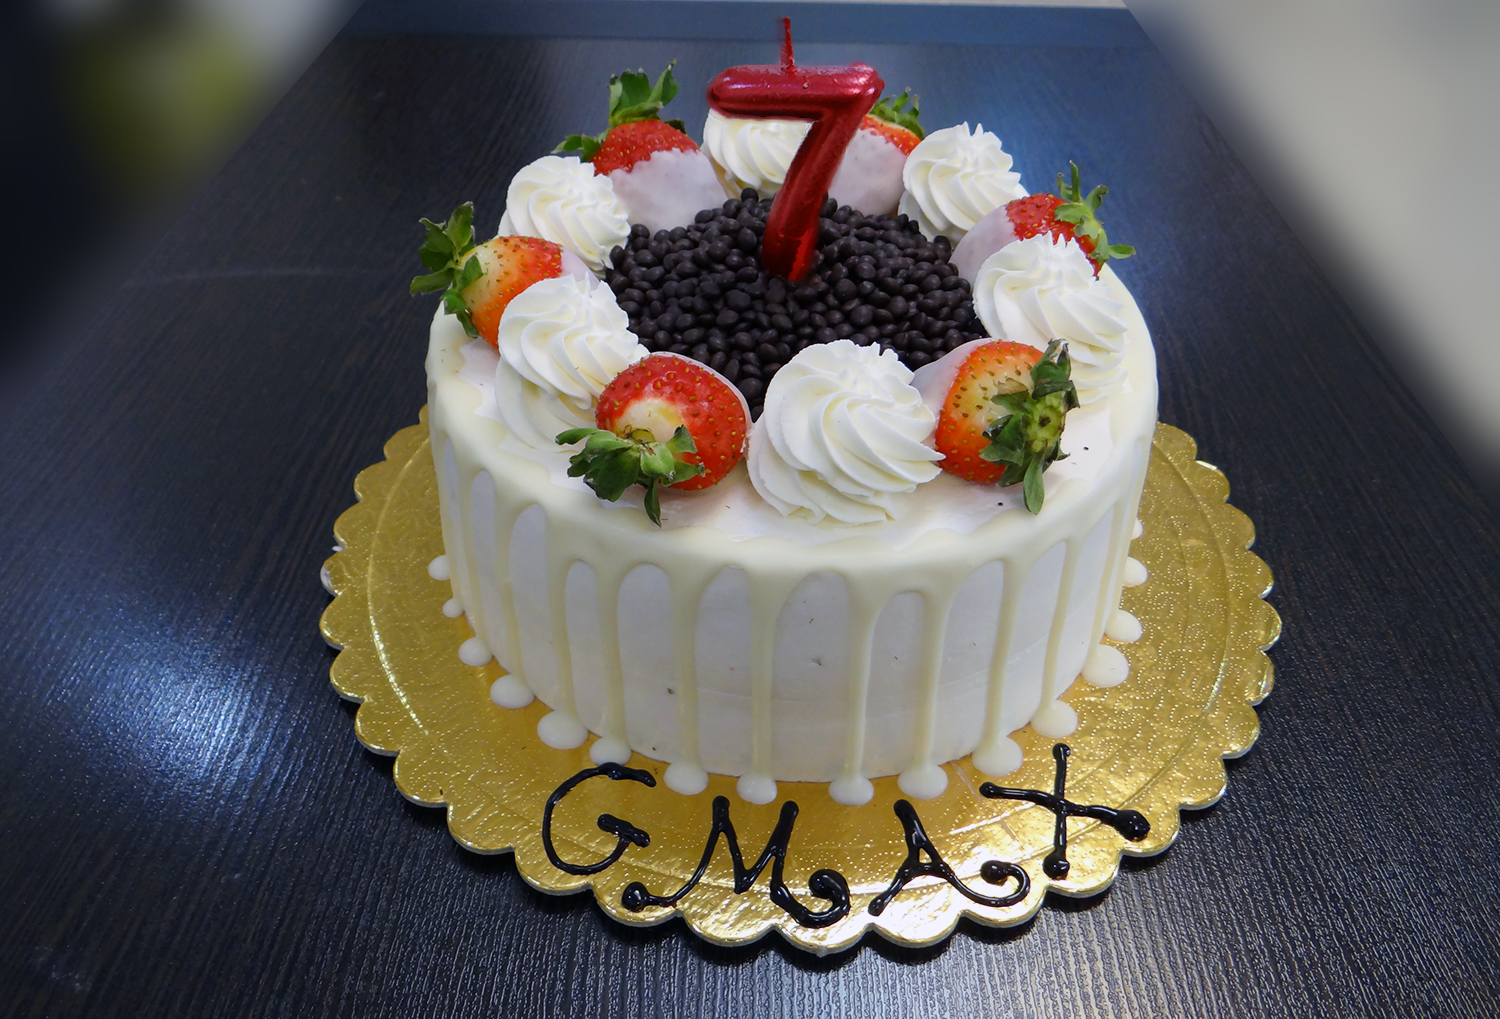 الاحتفال بعيد ميلاد GMAX السابع